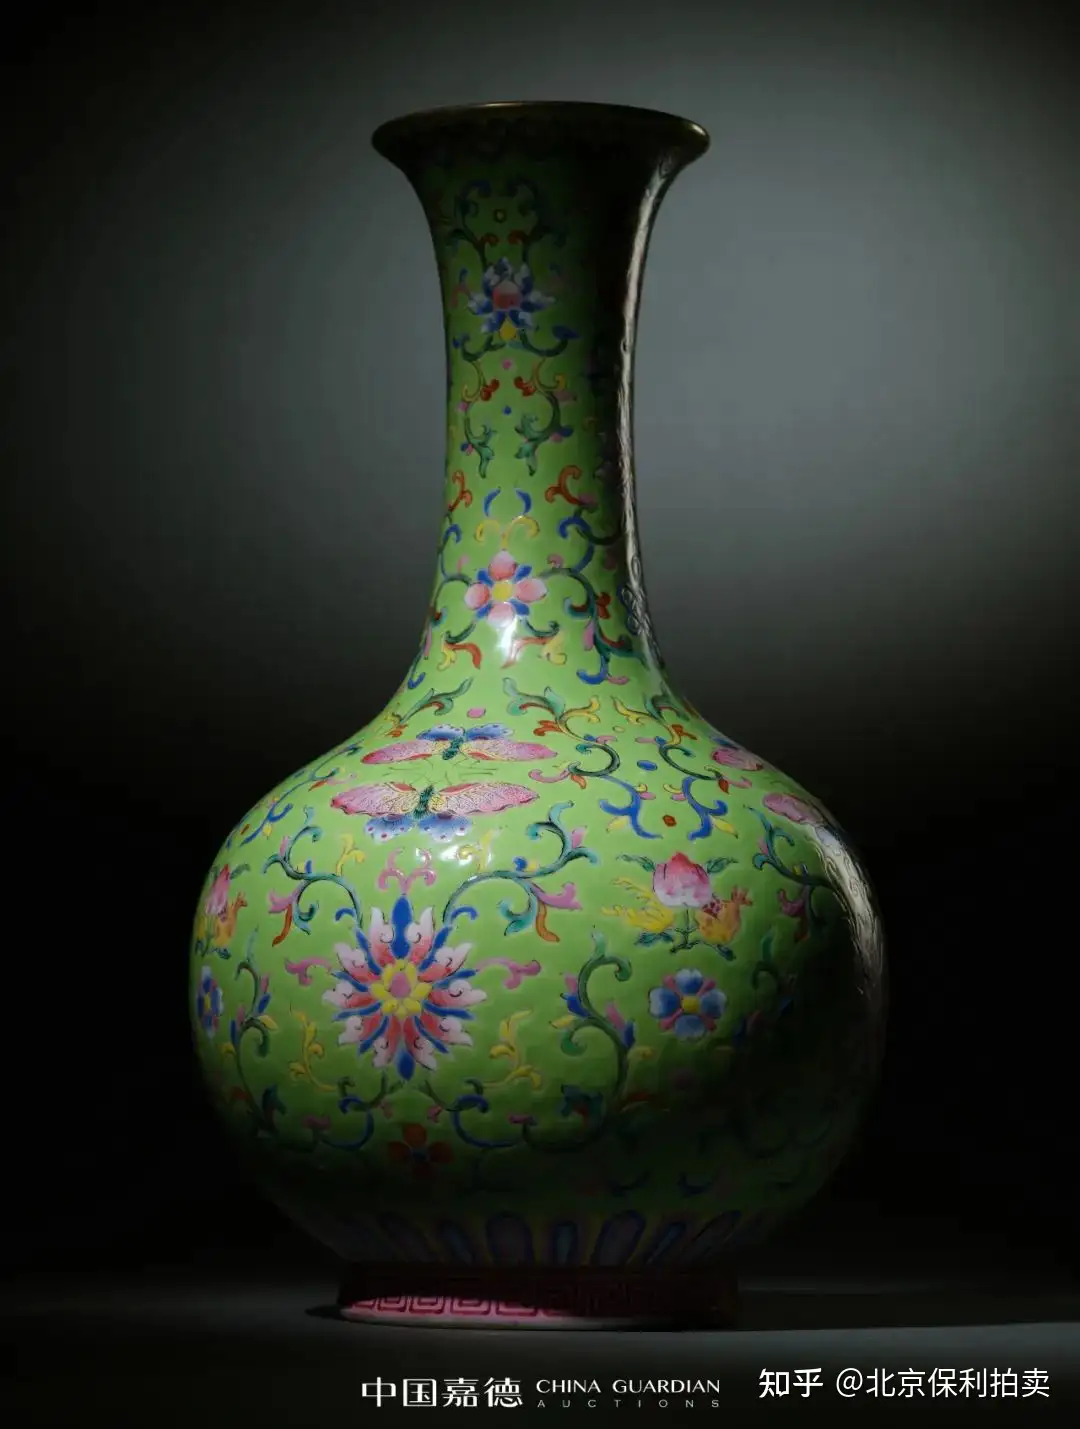 宋吉州窯色絵梅瓶 陶磁器 装飾品 工芸品 美術品 置物 景徳鎮 花瓶 - 工芸品